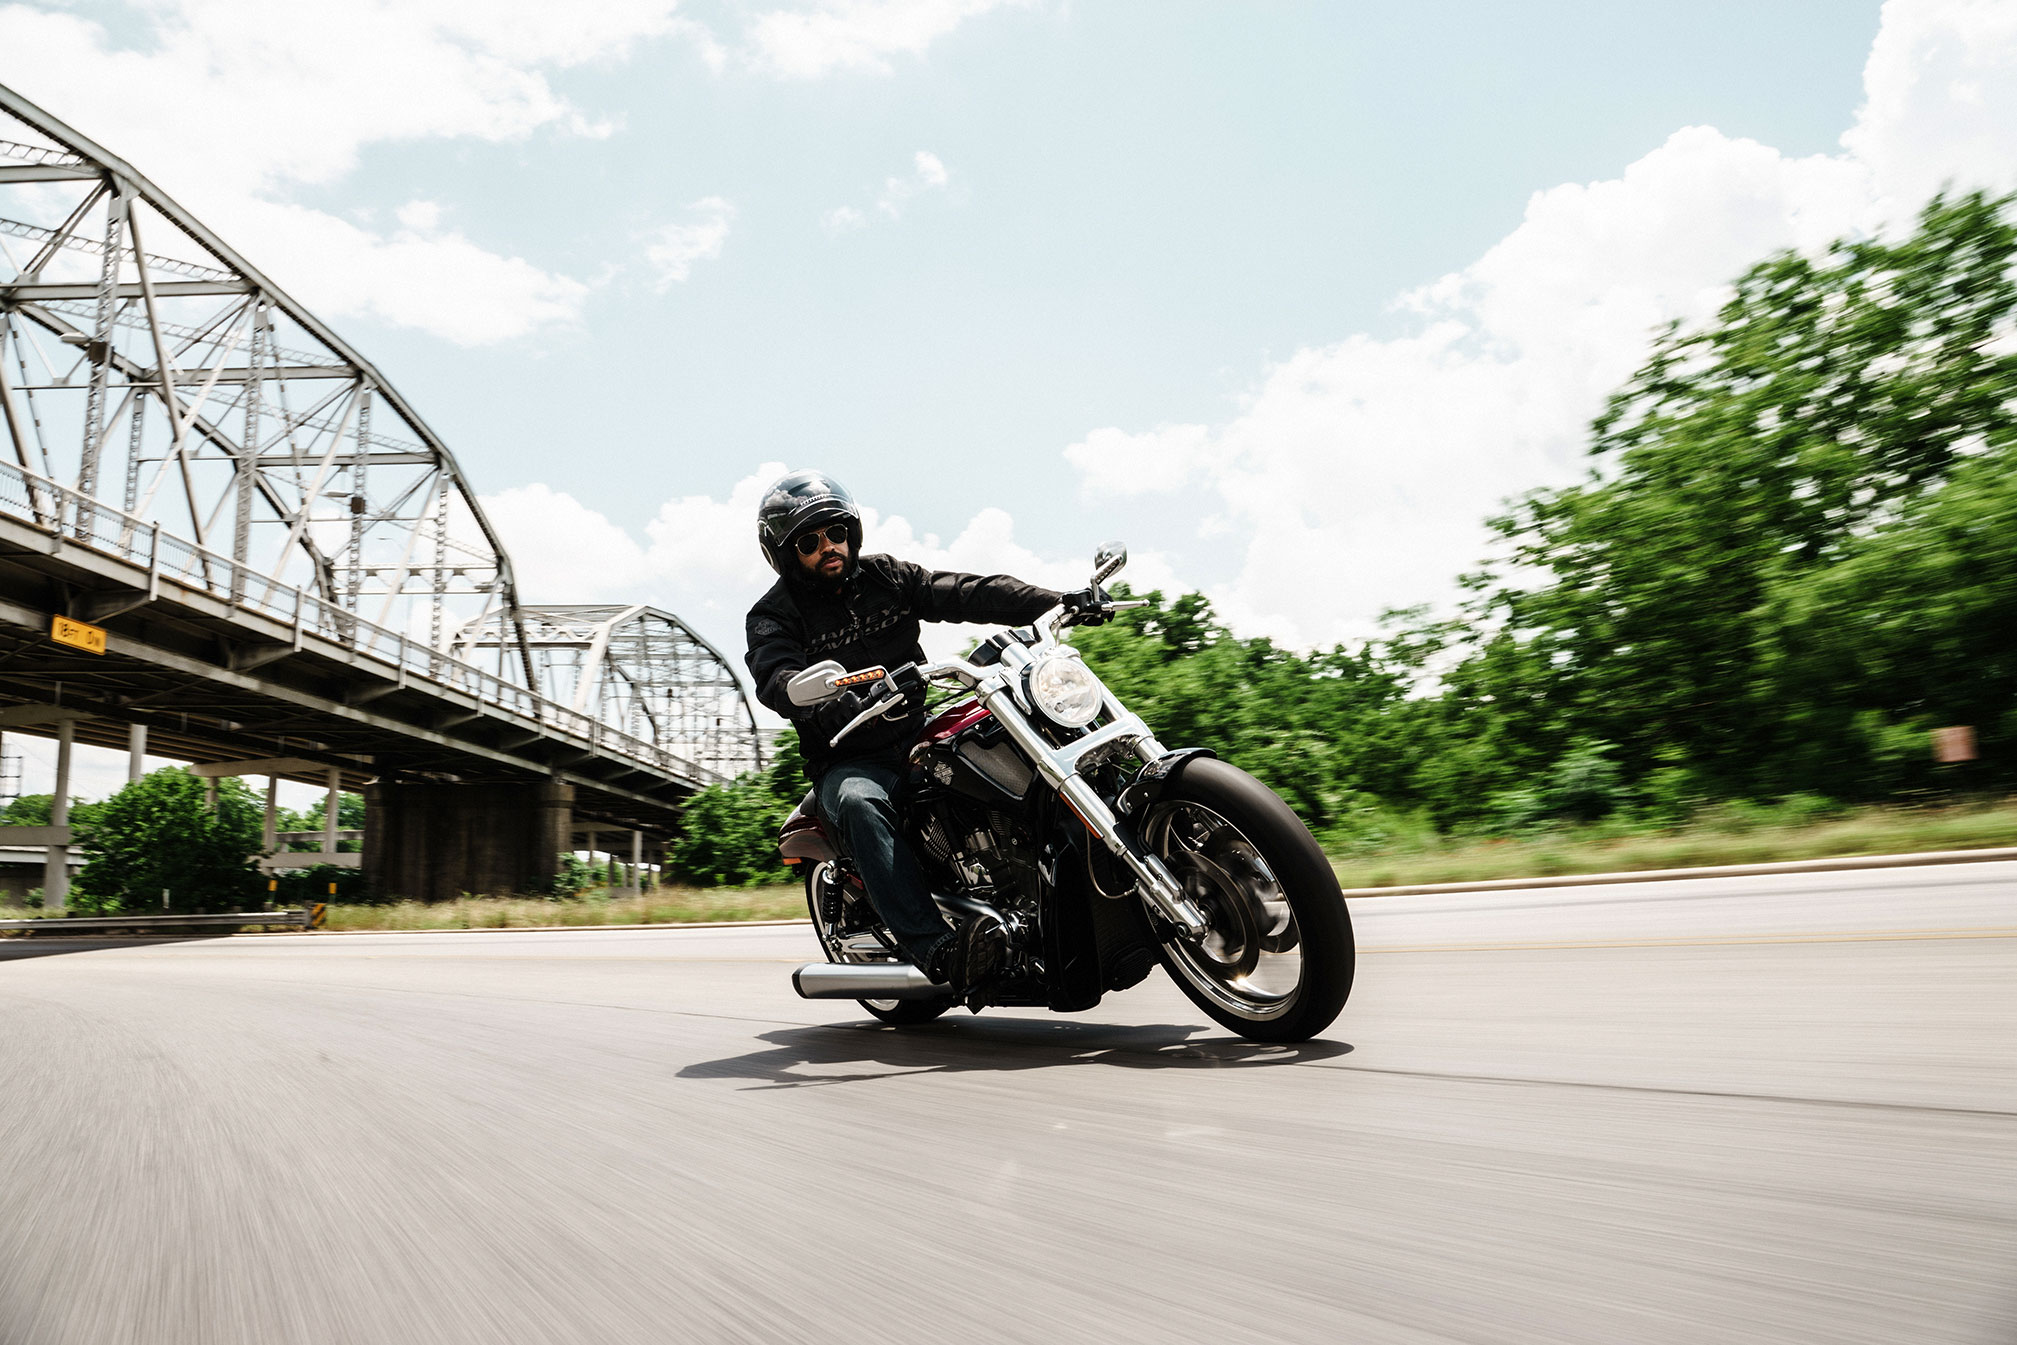 Скачать обои Harley Davidson V Rod Muscle на телефон бесплатно